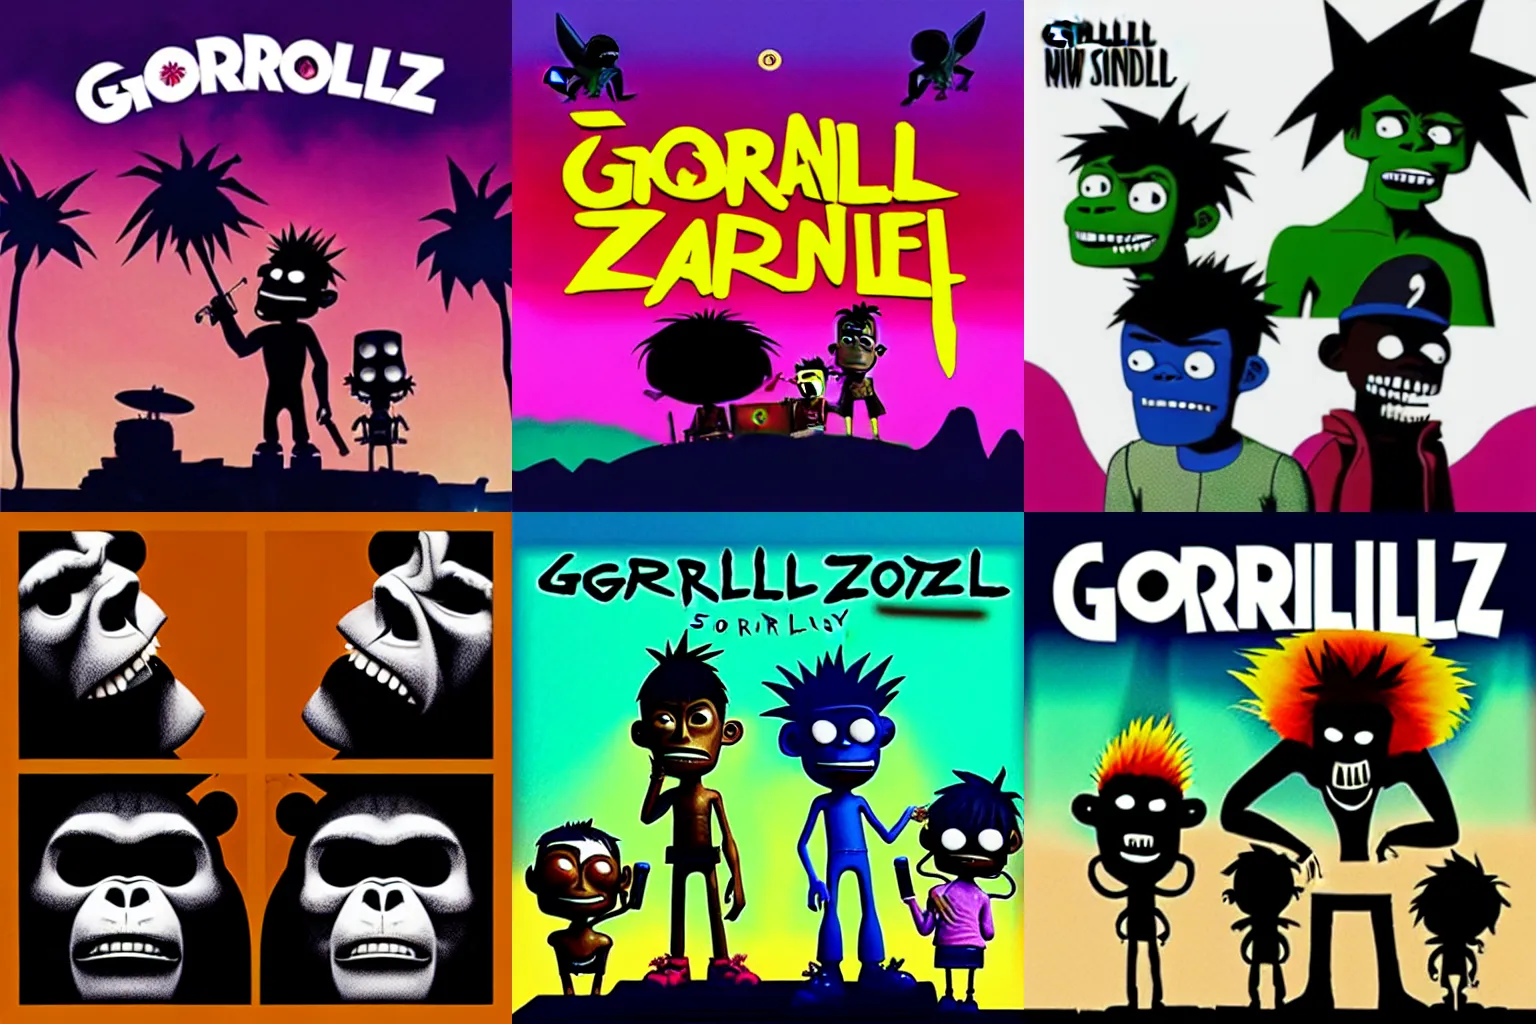 Prompt: Gorillaz new album